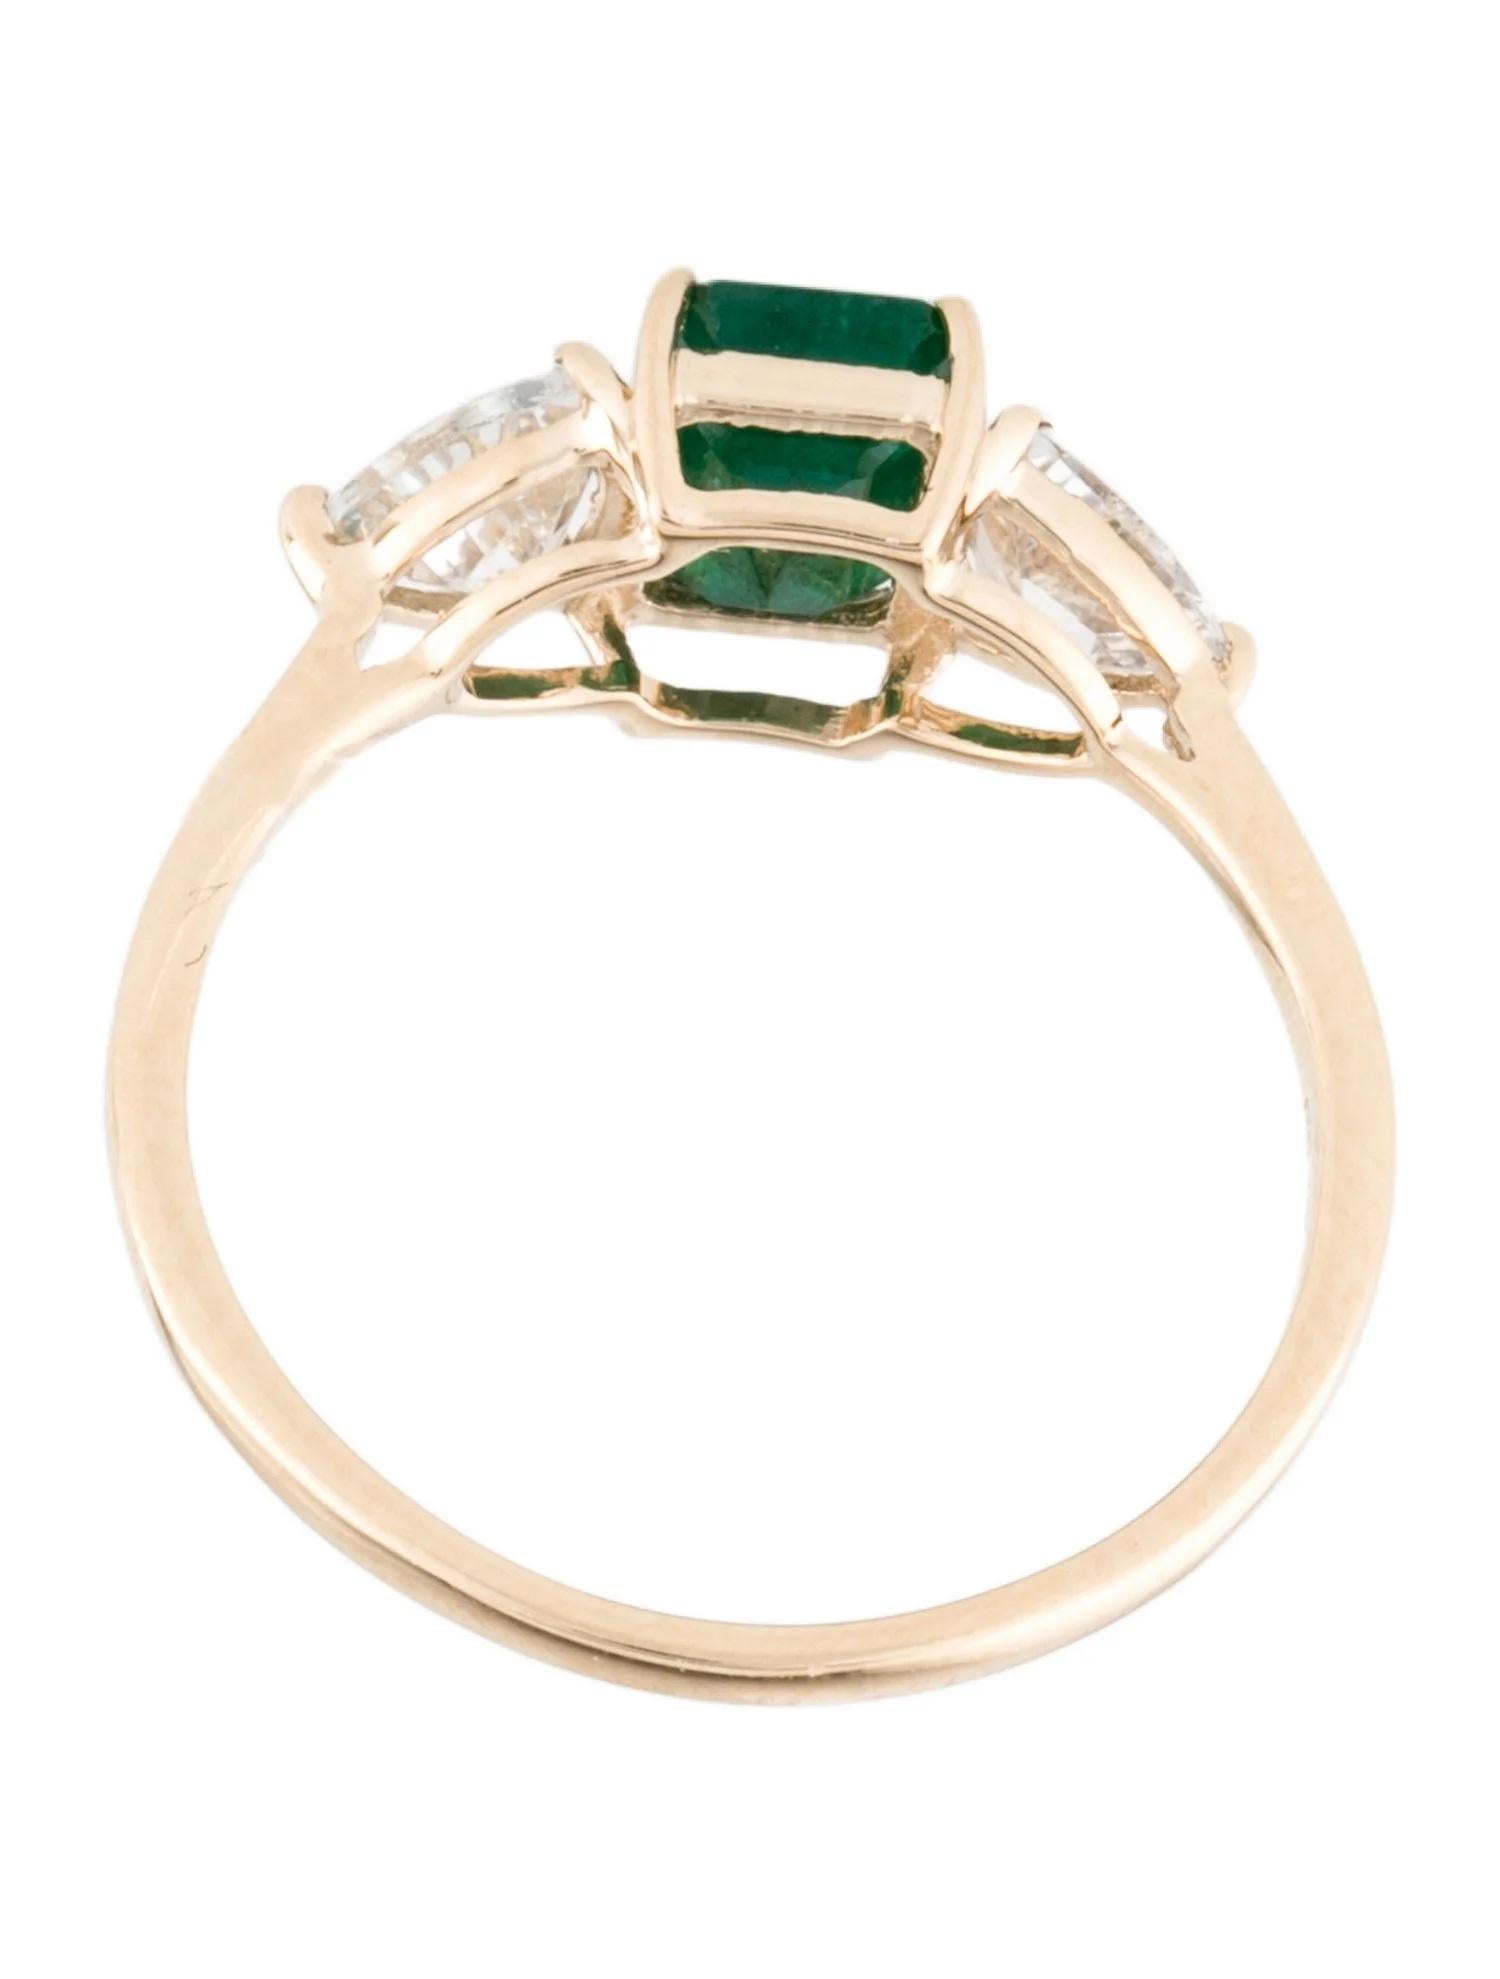 Women's 14K Emerald & Diamond Cocktail Ring  0.97ct Emerald Cut Emerald  1.01ct Modifi For Sale